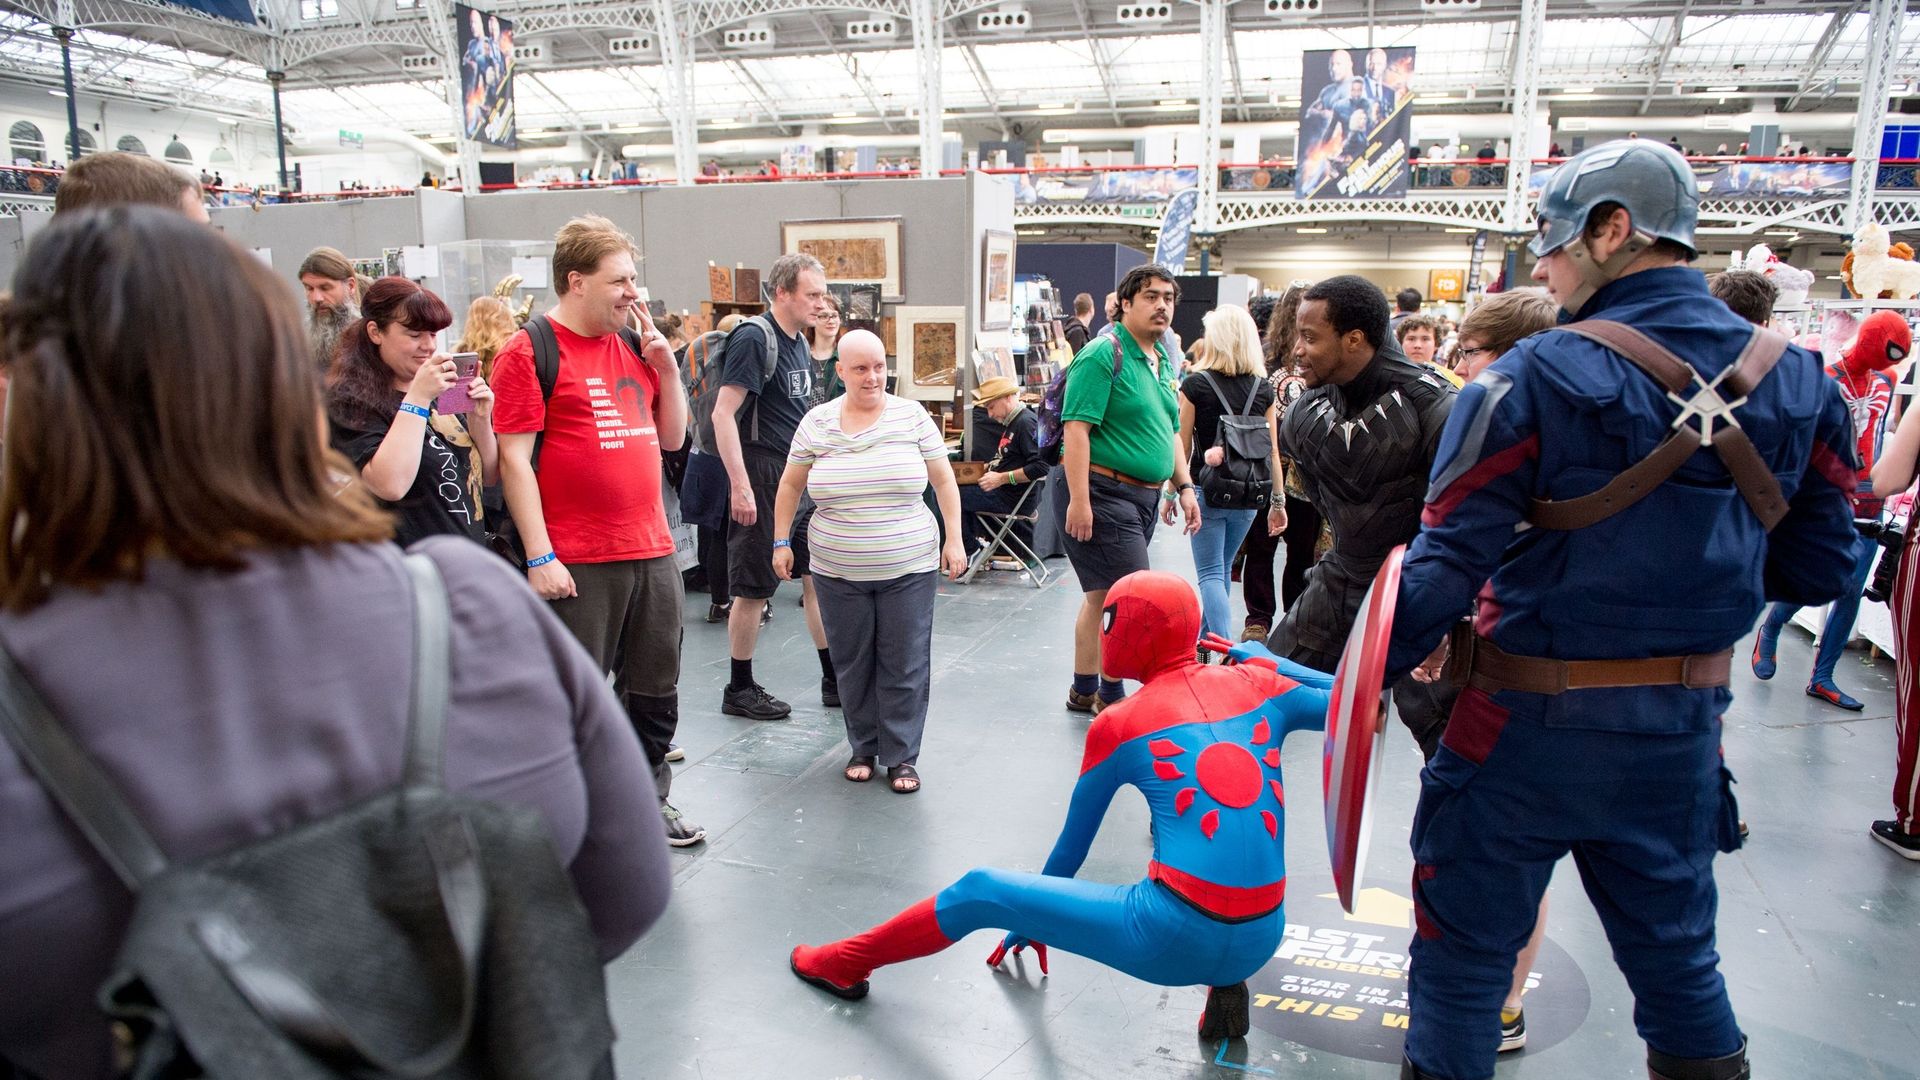 Des cosplayers Avengers en personnage de Sipder Man, Black Panther et Captain America posent pour des photos avec le public lors du London Film and Comic Con 2019 à l’Olympia London le 27 juillet 2019 à Londres, en Angleterre.